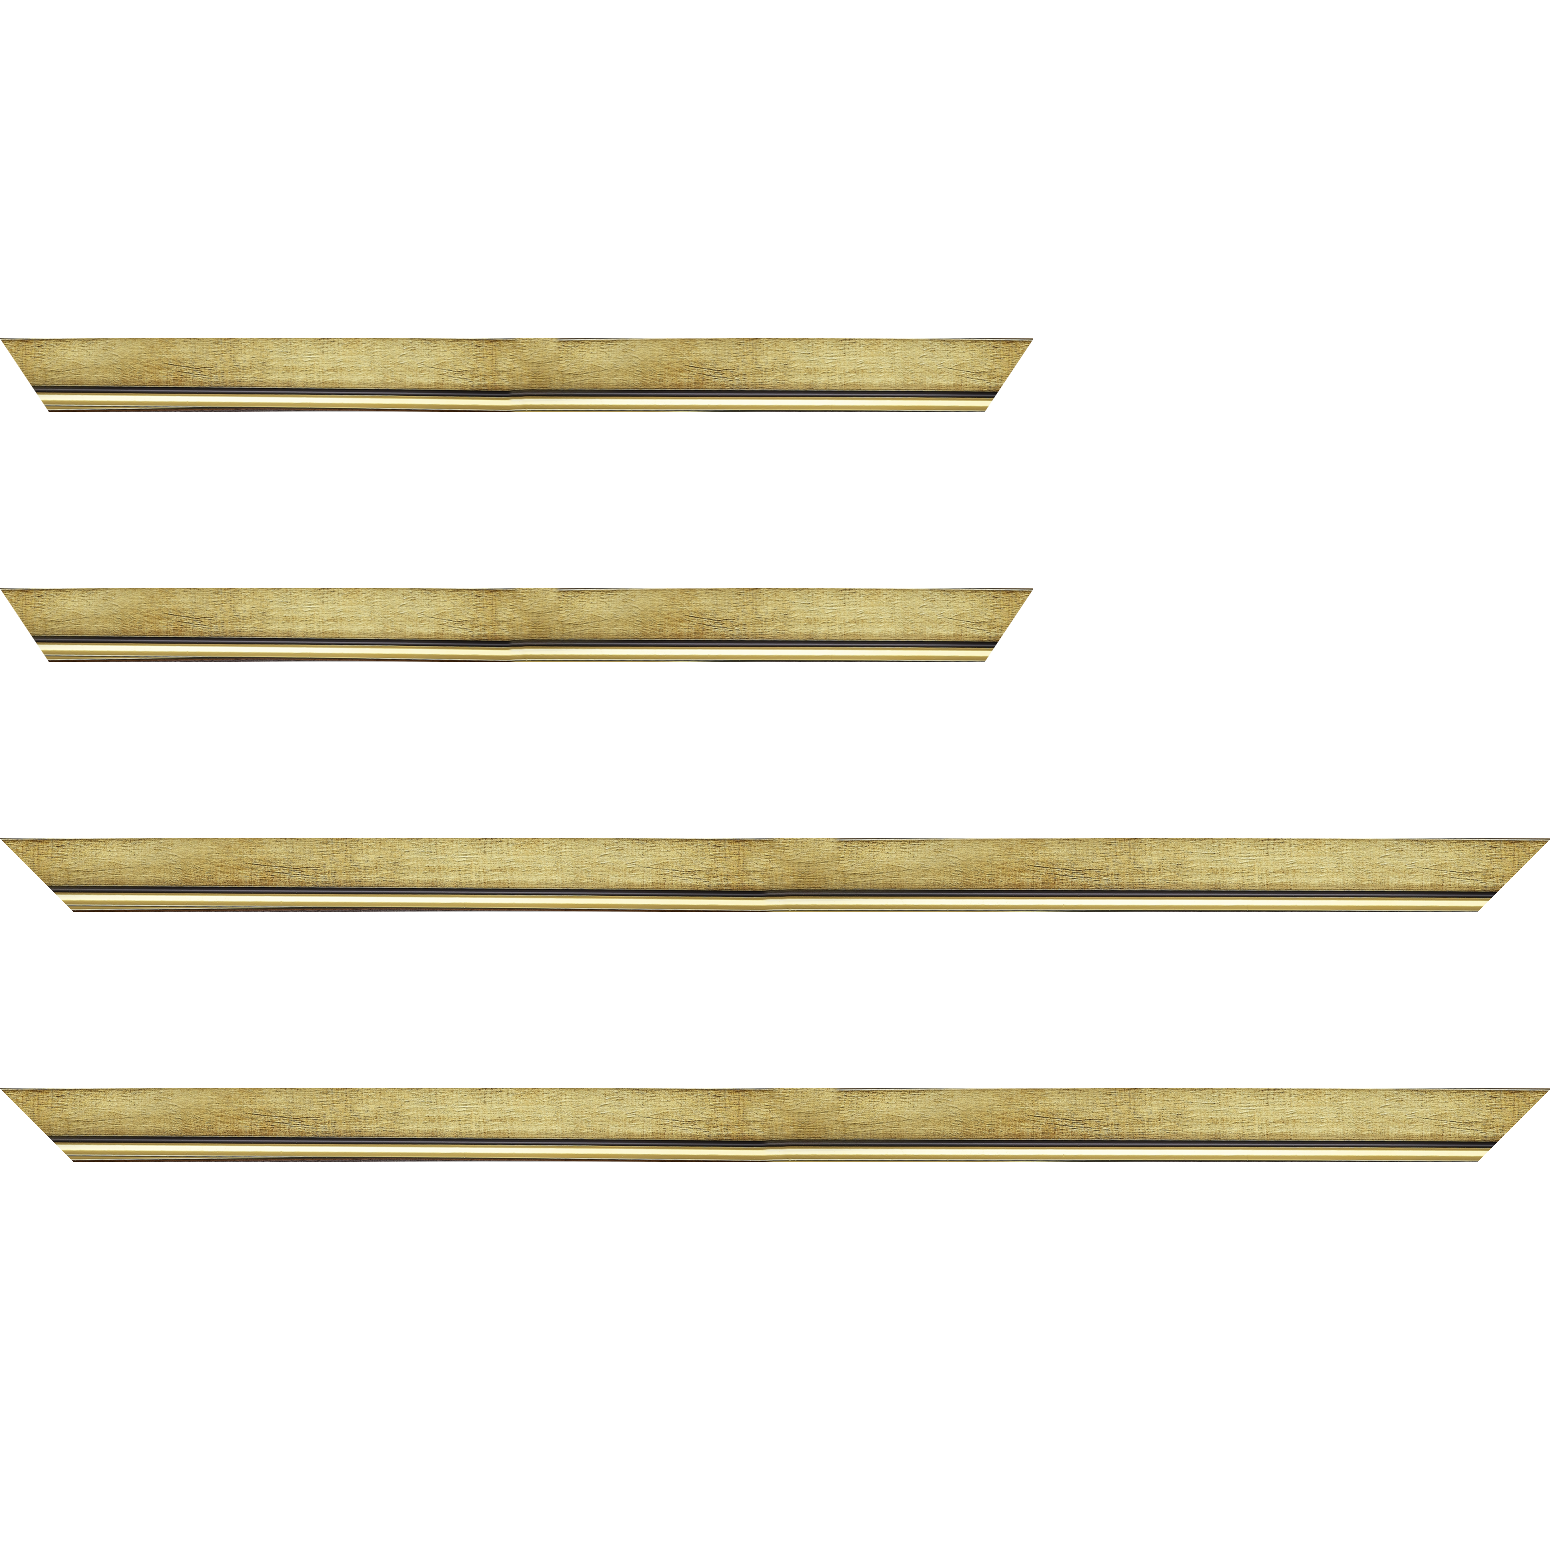 Baguette bois profil plat largeur 2.5cm couleur or filet or surligné noir